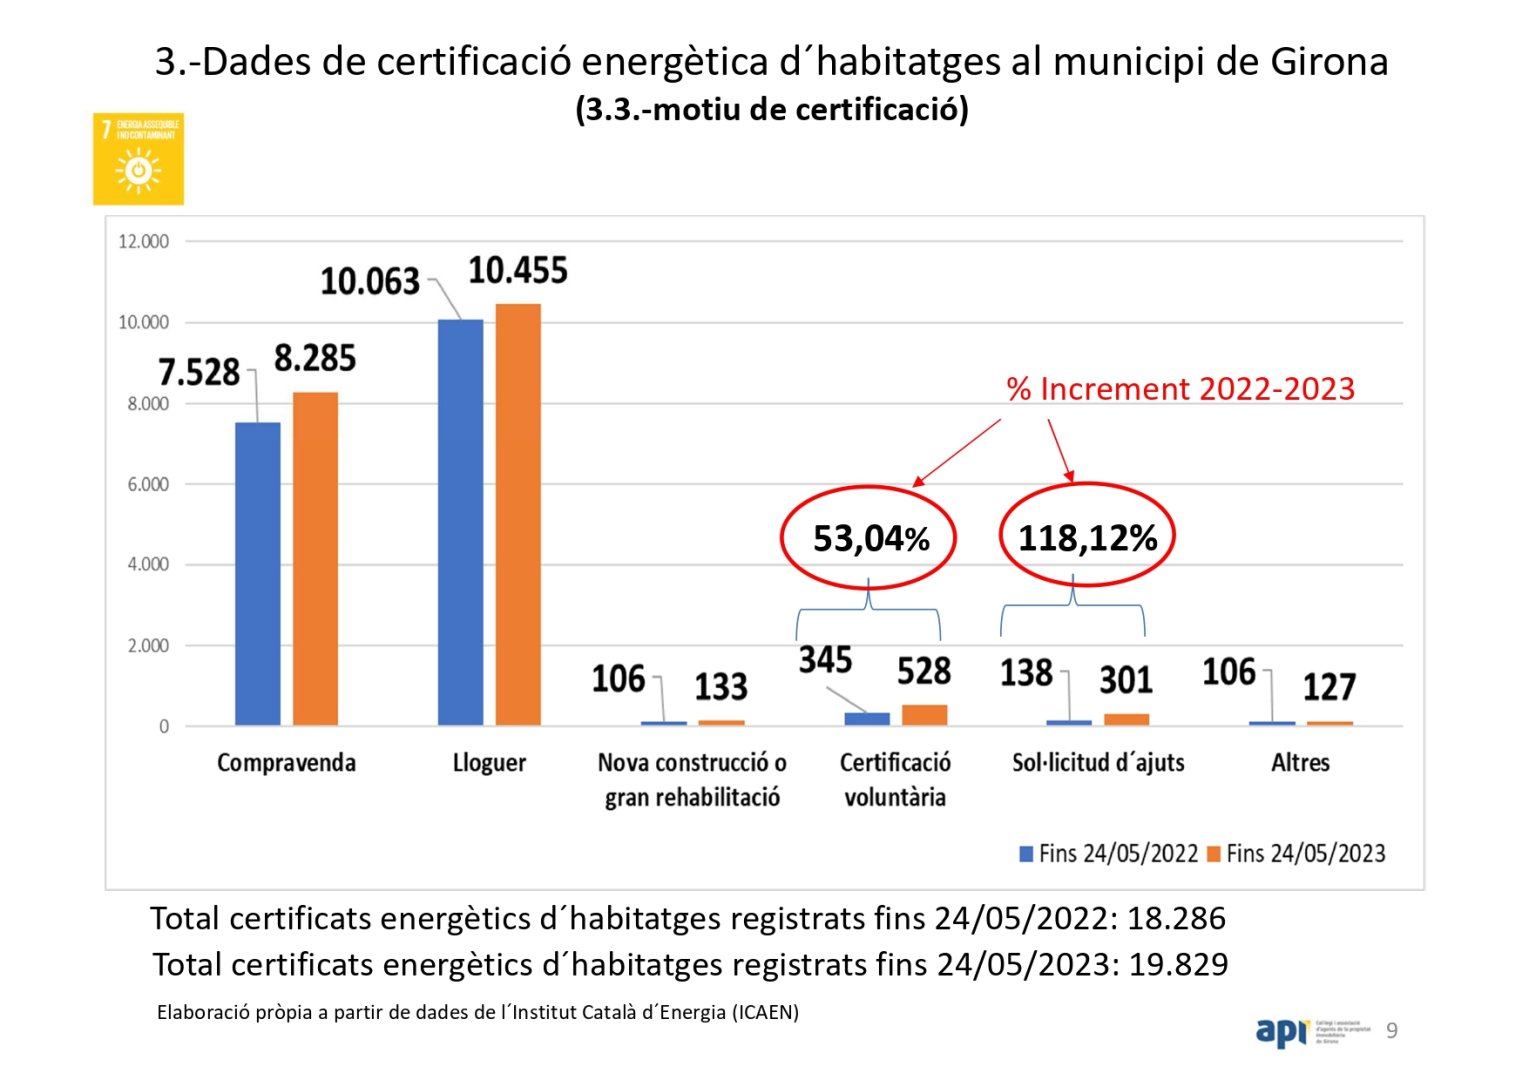 Total certificats energètics registrats. Dades a Girona fins 24/5/2023